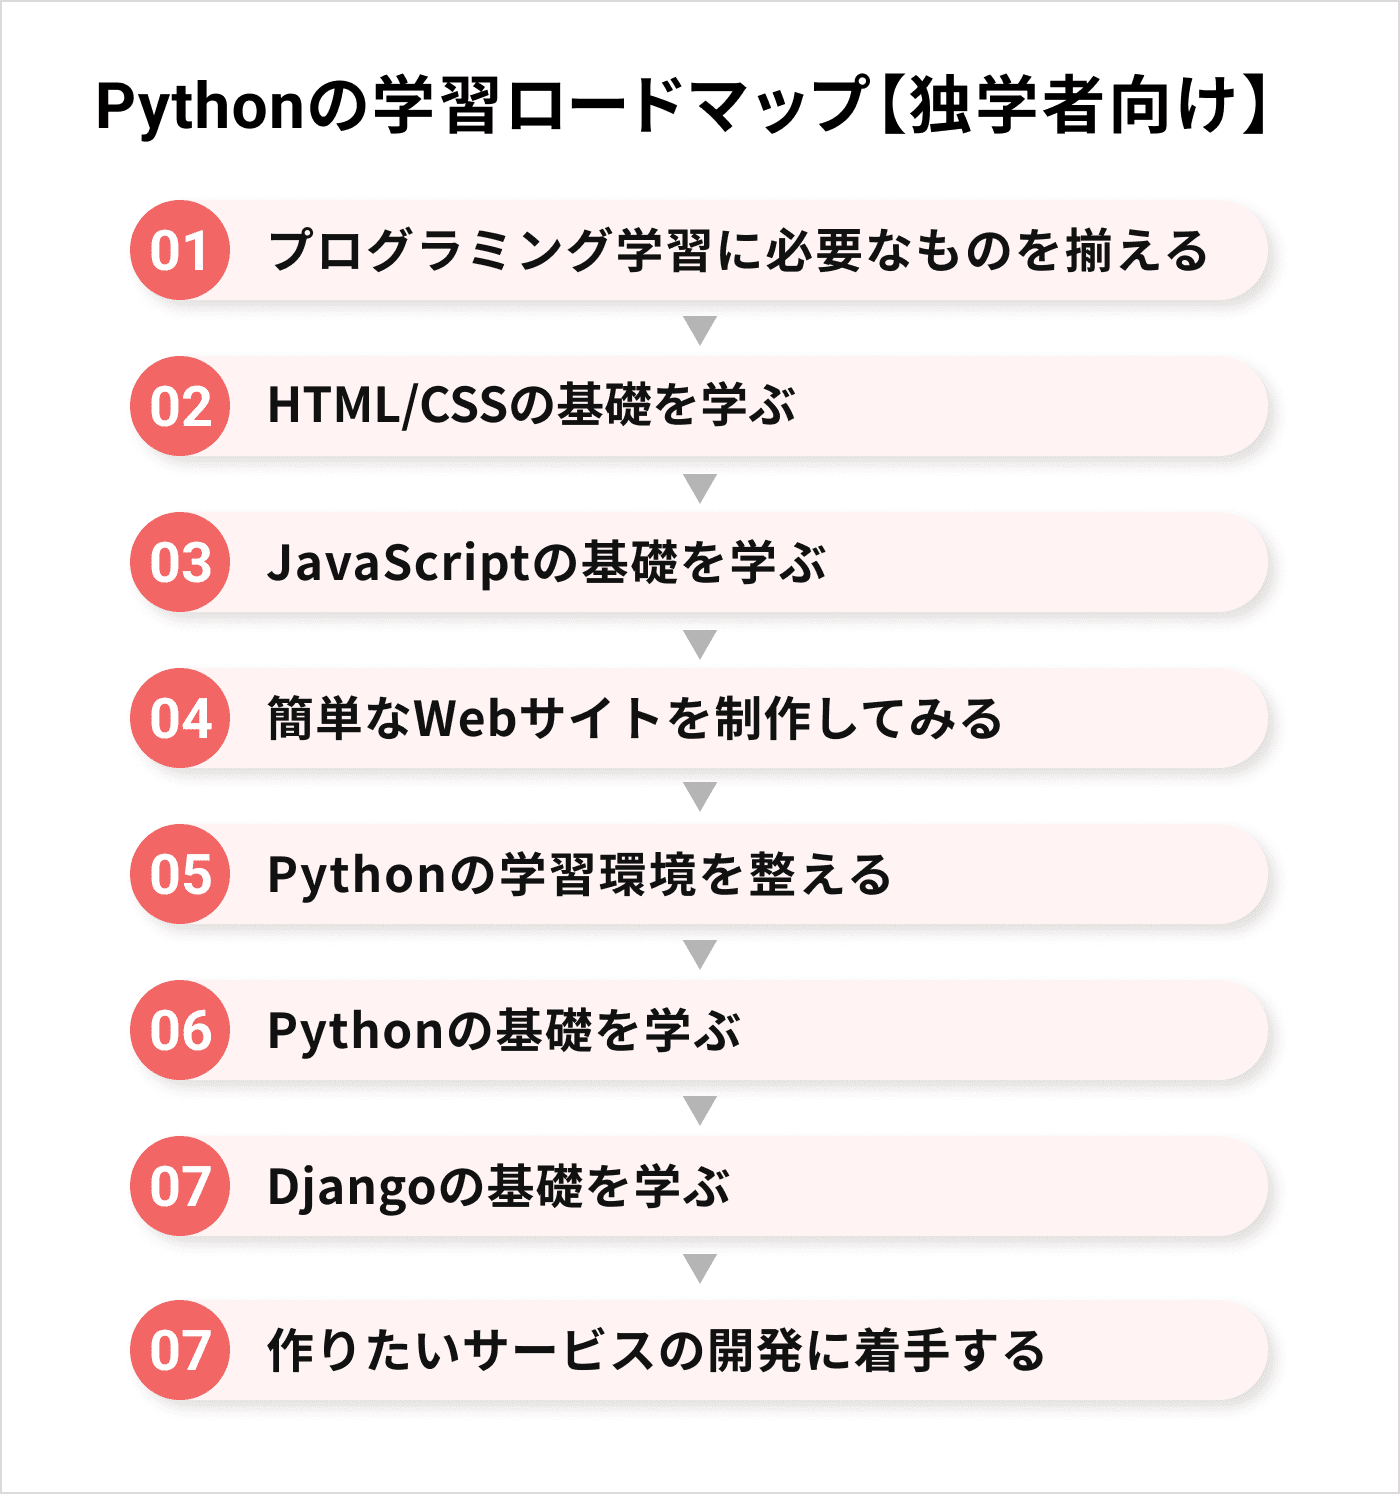 Pythonの学習ロードマップ【独学者向け】